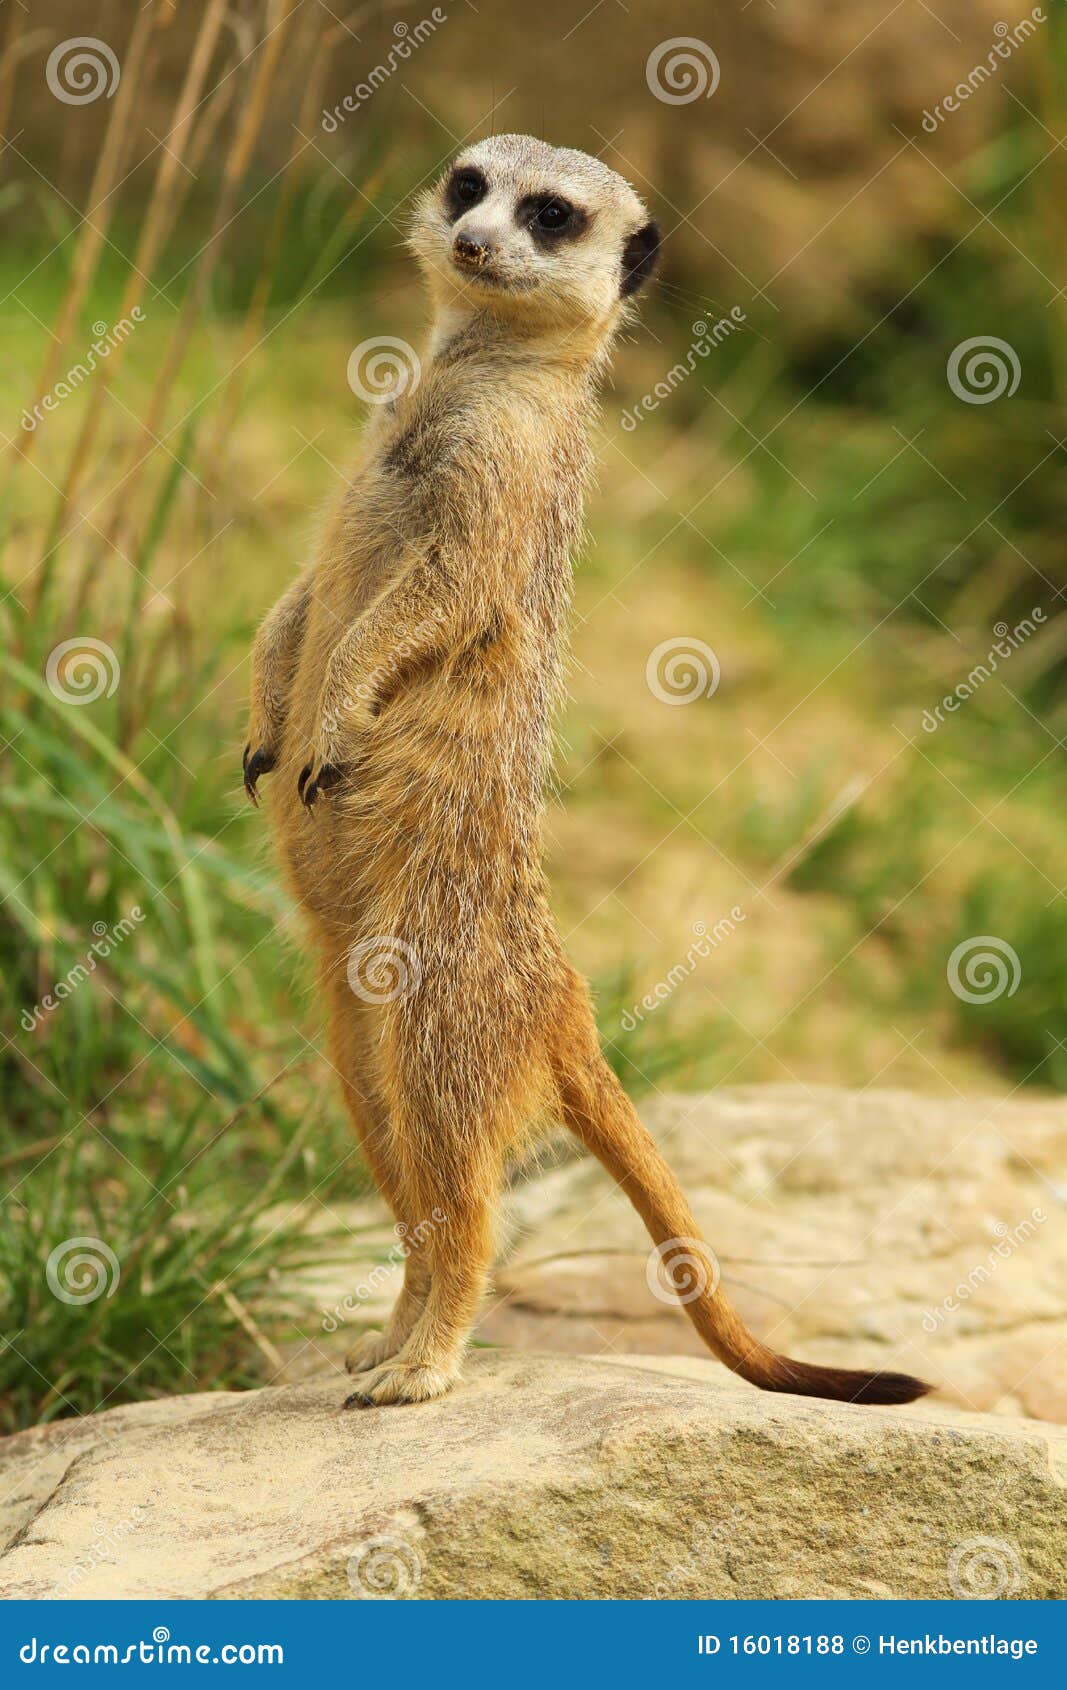 meerkat standing upright